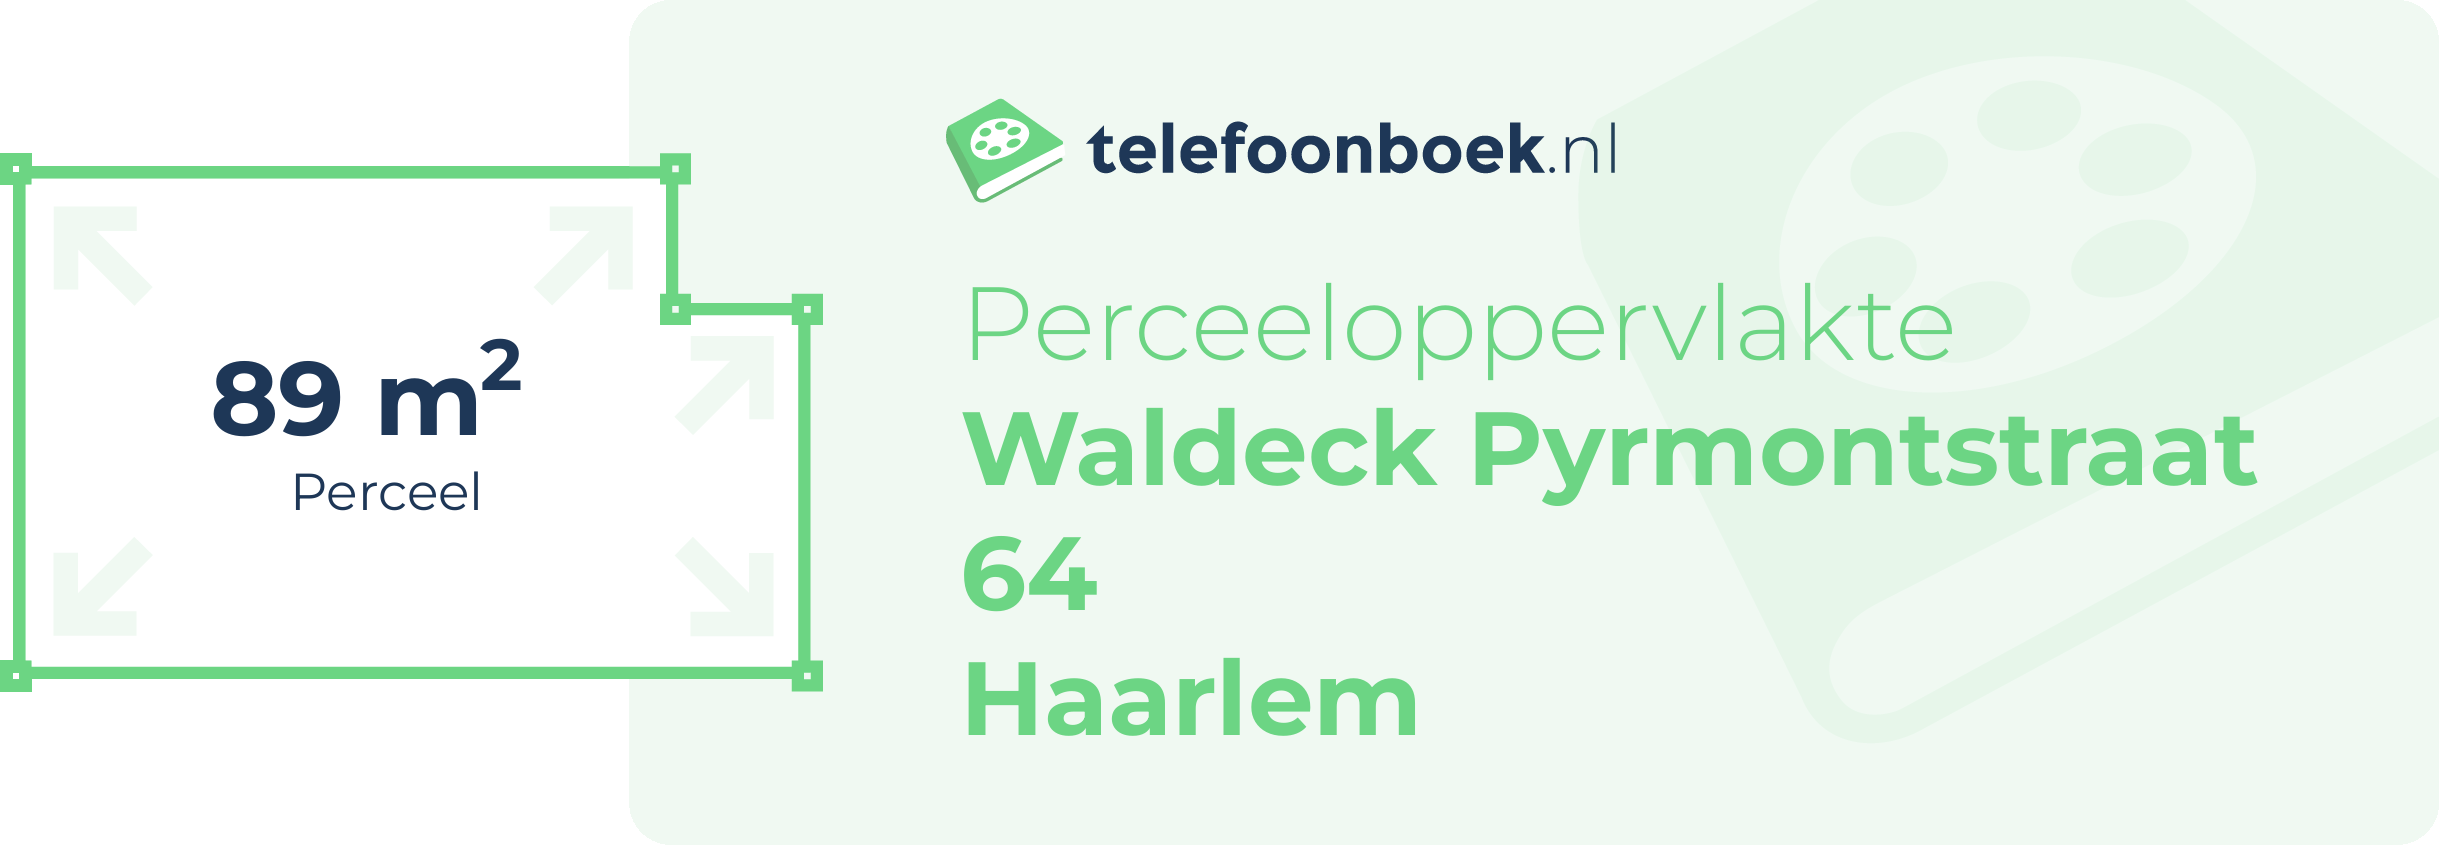 Perceeloppervlakte Waldeck Pyrmontstraat 64 Haarlem